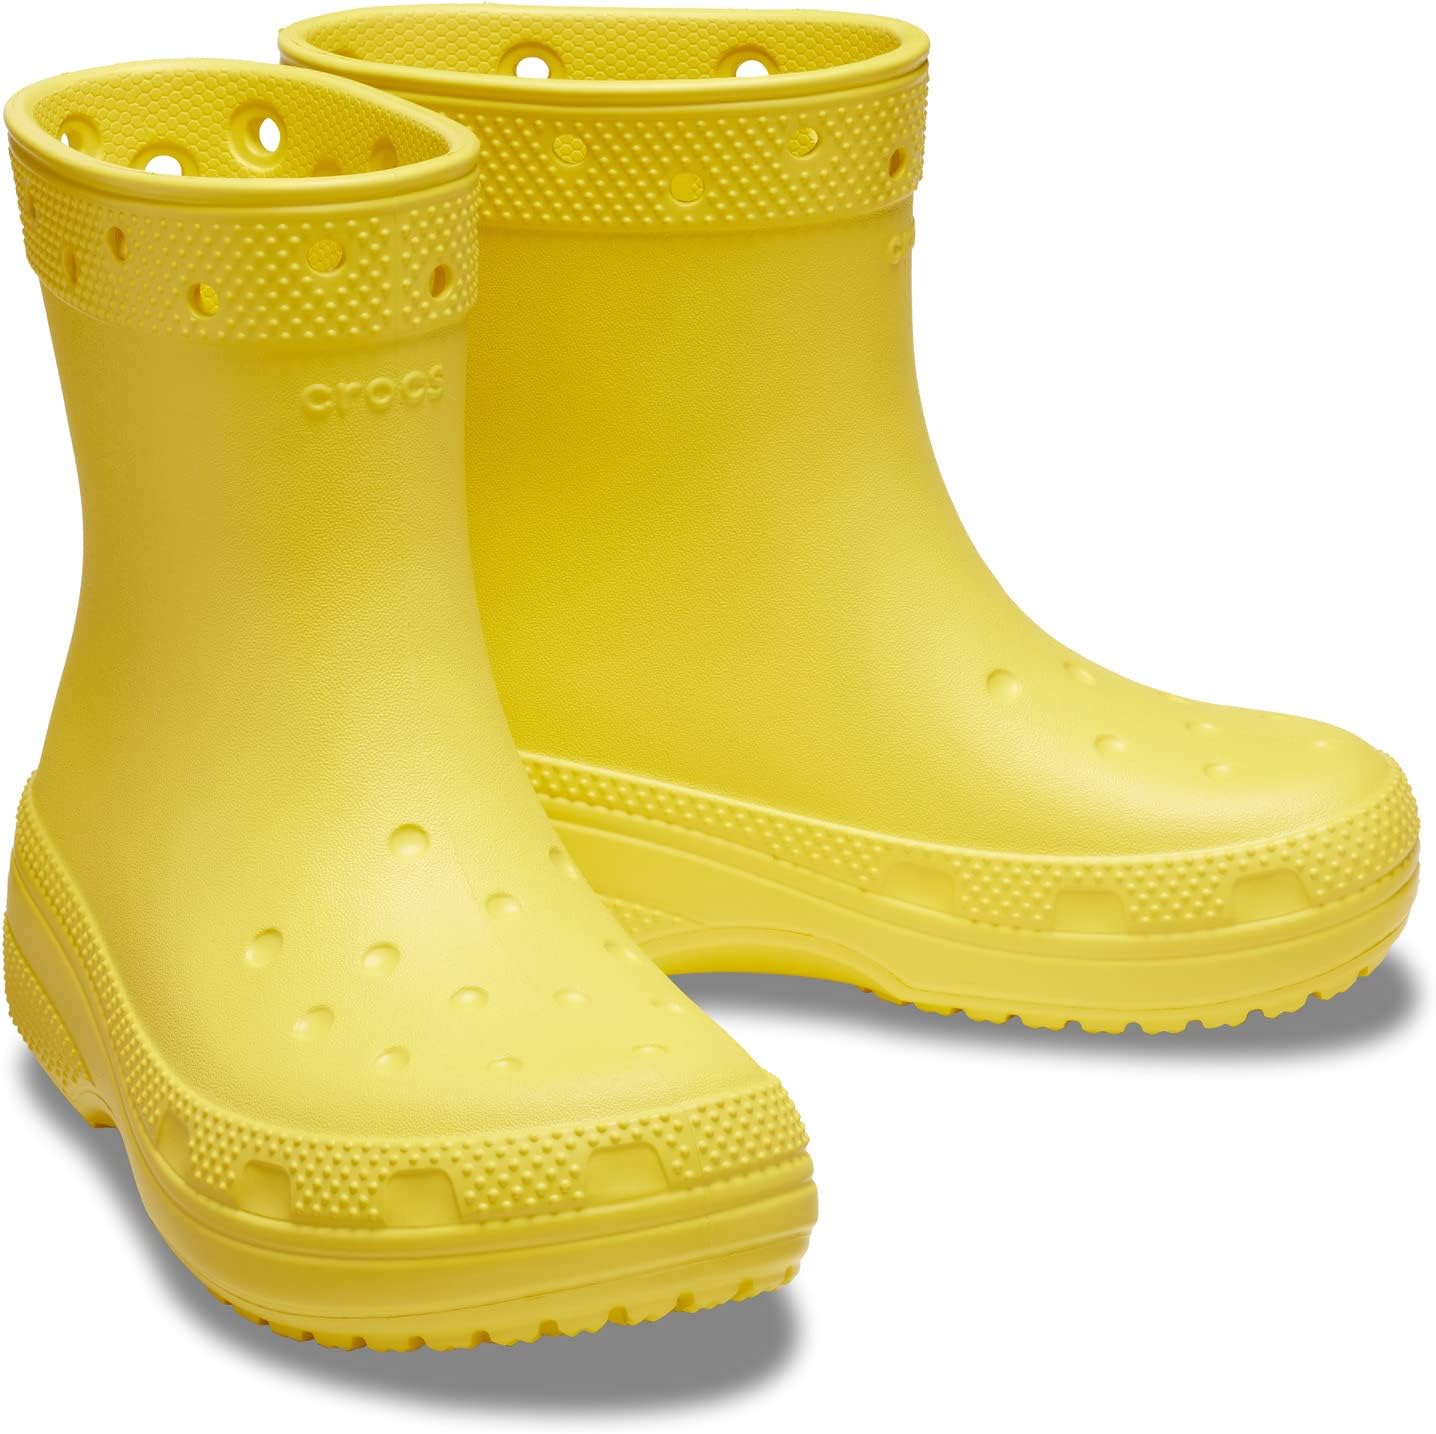 Резиновые сапоги Classic Rain Boot Crocs, цвет Sunflower цена и фото